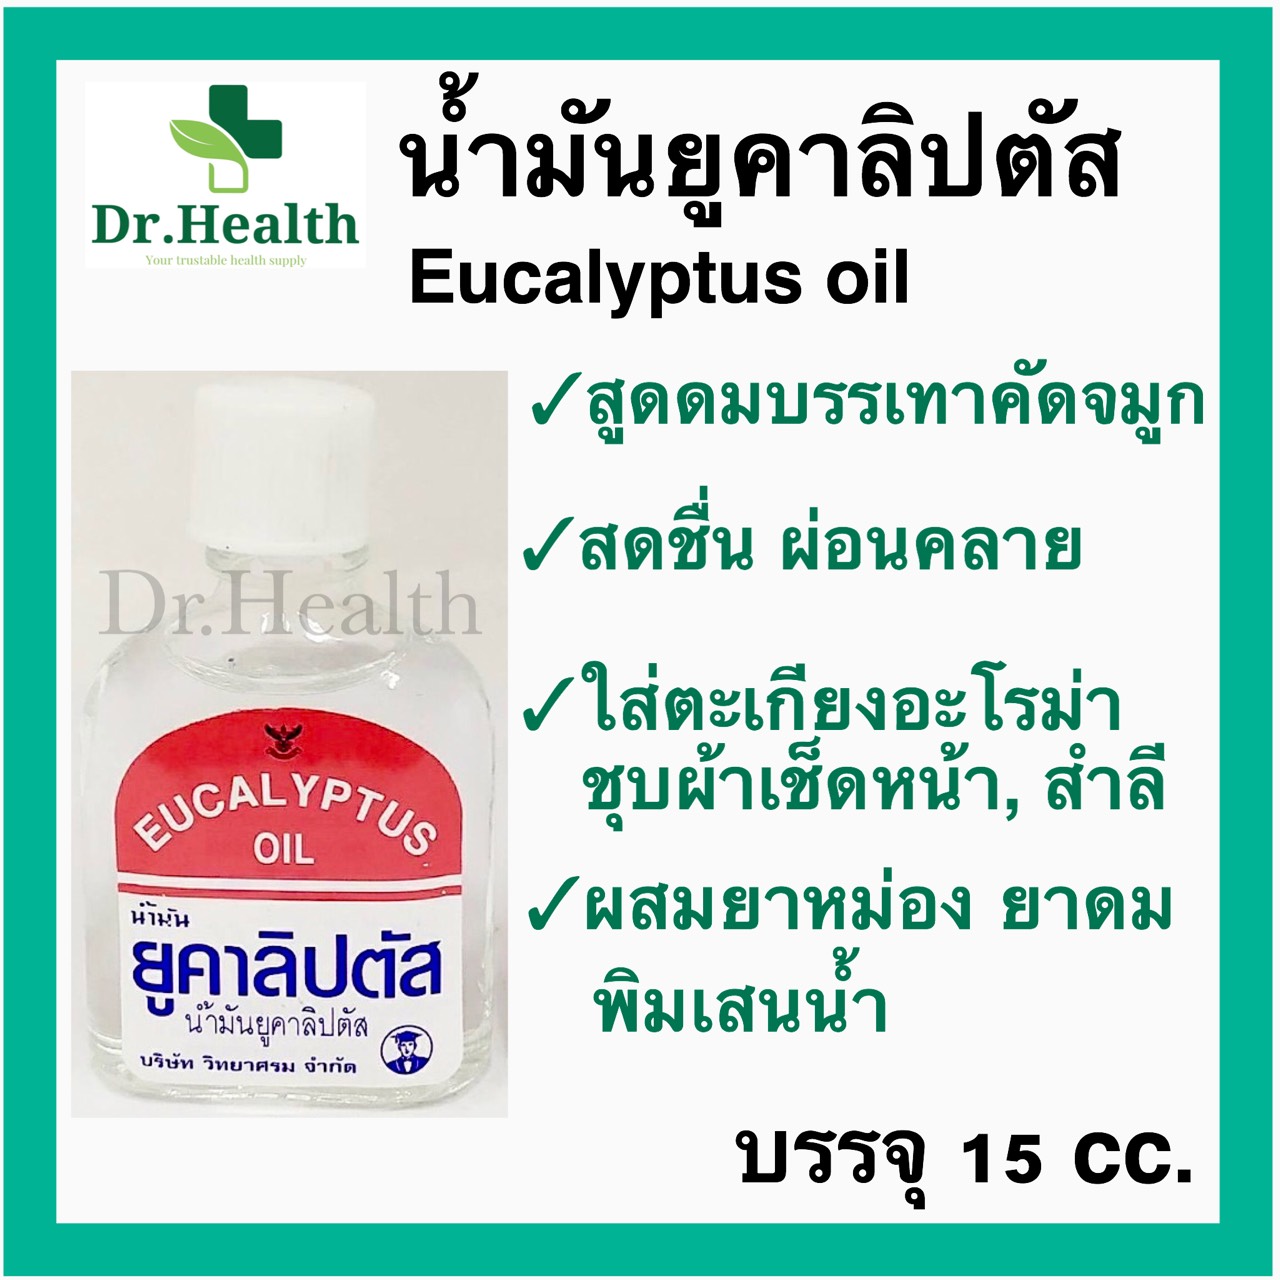 น้ำมันยูคาลิปตัส Eucalyptus Oil [exp2023 ใหม่มาก] วศ วิทยาศรม Aroma น้ำมันหอม อะโรม่า สดชื่น ปรับอากาศ ดับกลิ่น diffuser